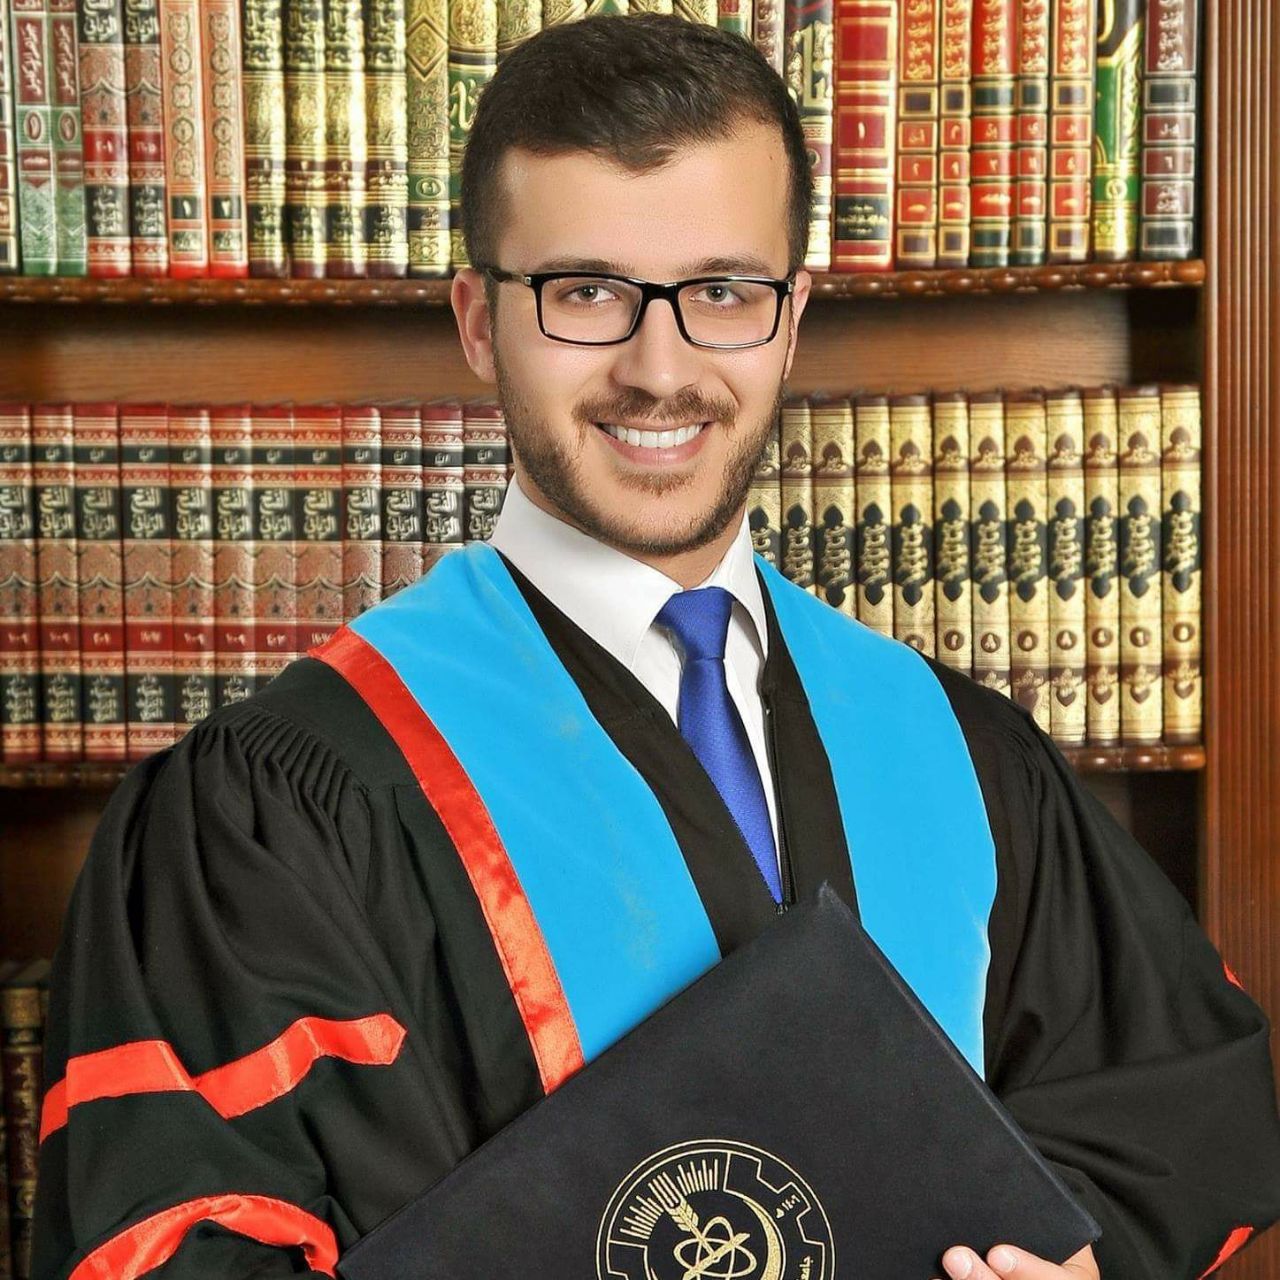 مبارك التخرج للدكتور " زيد عامر الايوب"